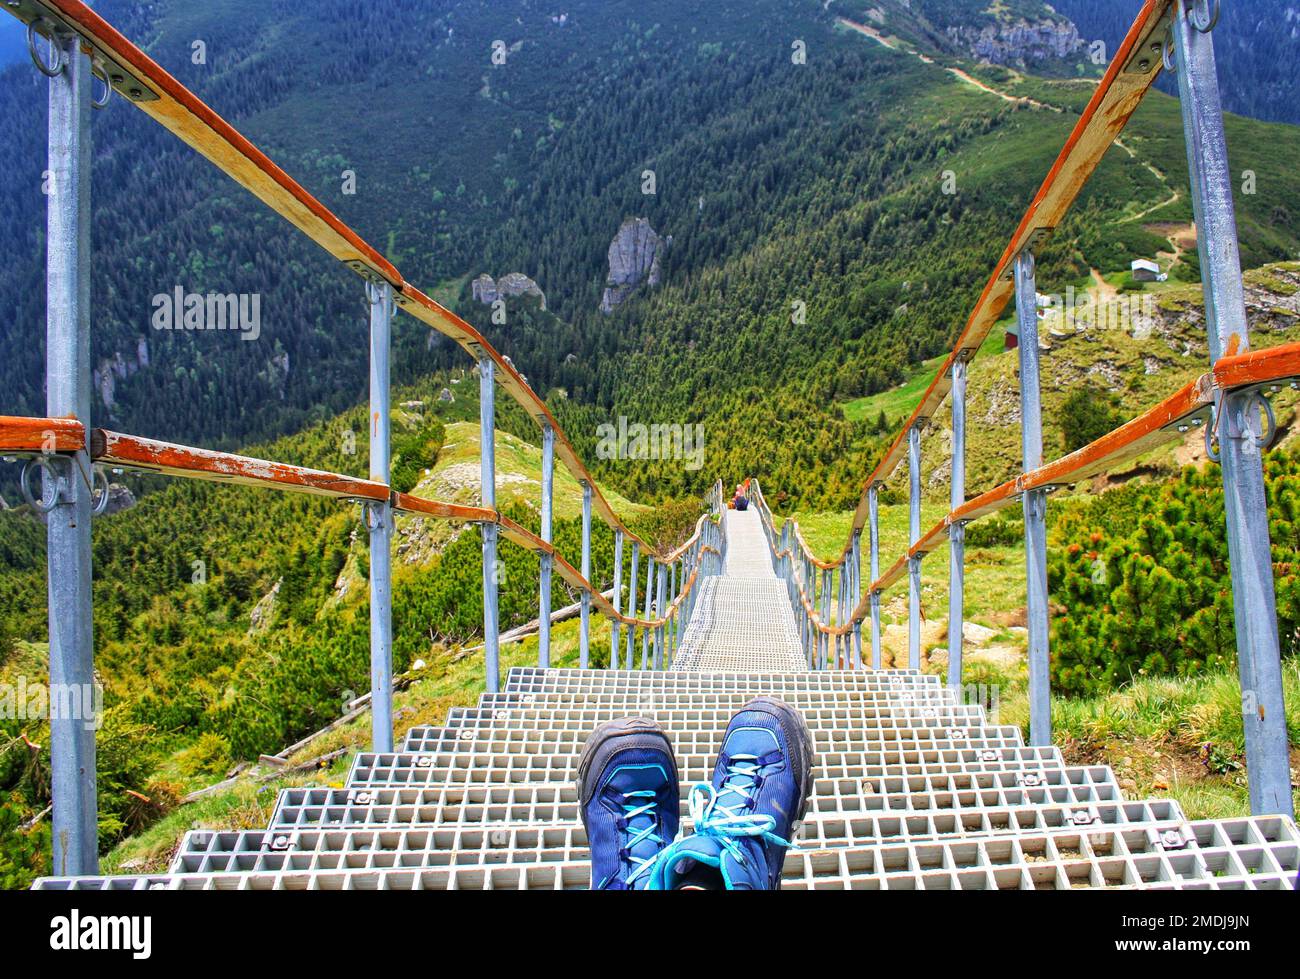 Les escaliers vers le ciel. 500 escaliers jusqu'à ce que vous arriviez au pic de Toaca, sur la montagne de Ceahlau, Roumanie. Banque D'Images